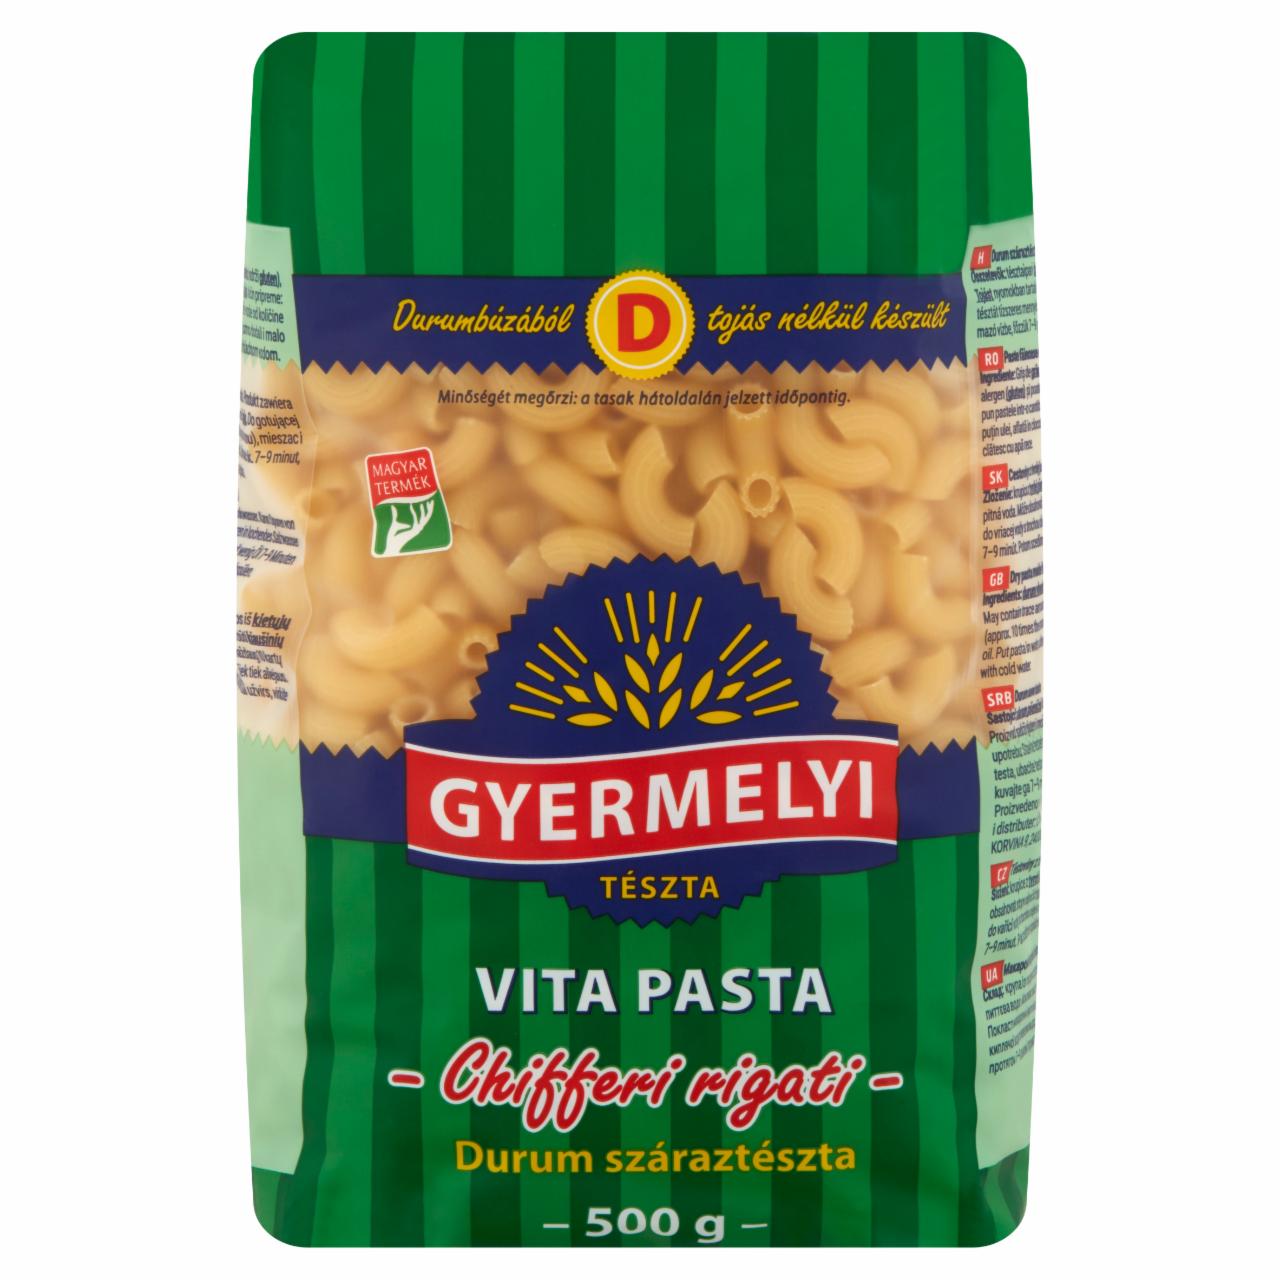 Képek - Gyermelyi Vita Pasta Chifferi Rrigati durum száraztészta 500 g